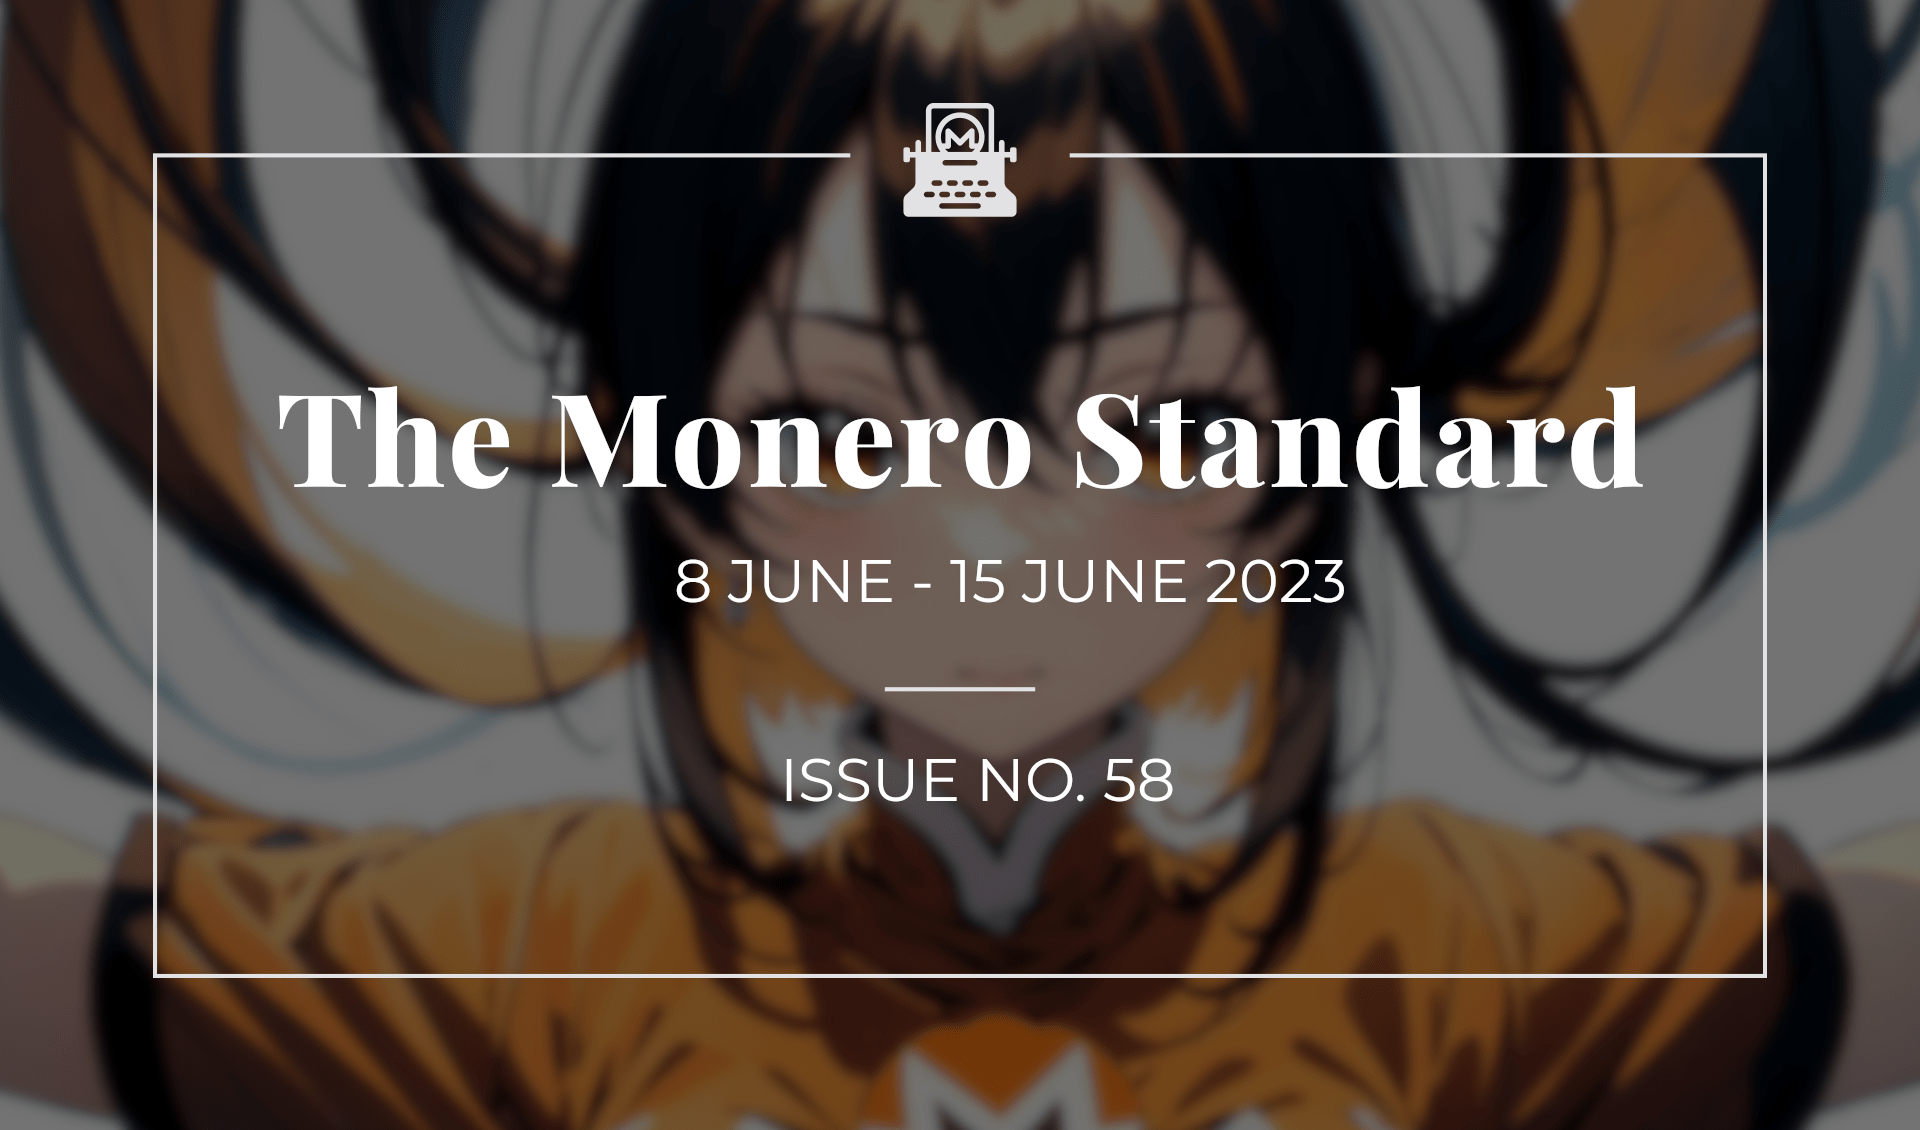 The Monero Standard #58: 8 June 2023 - 15 June 2023